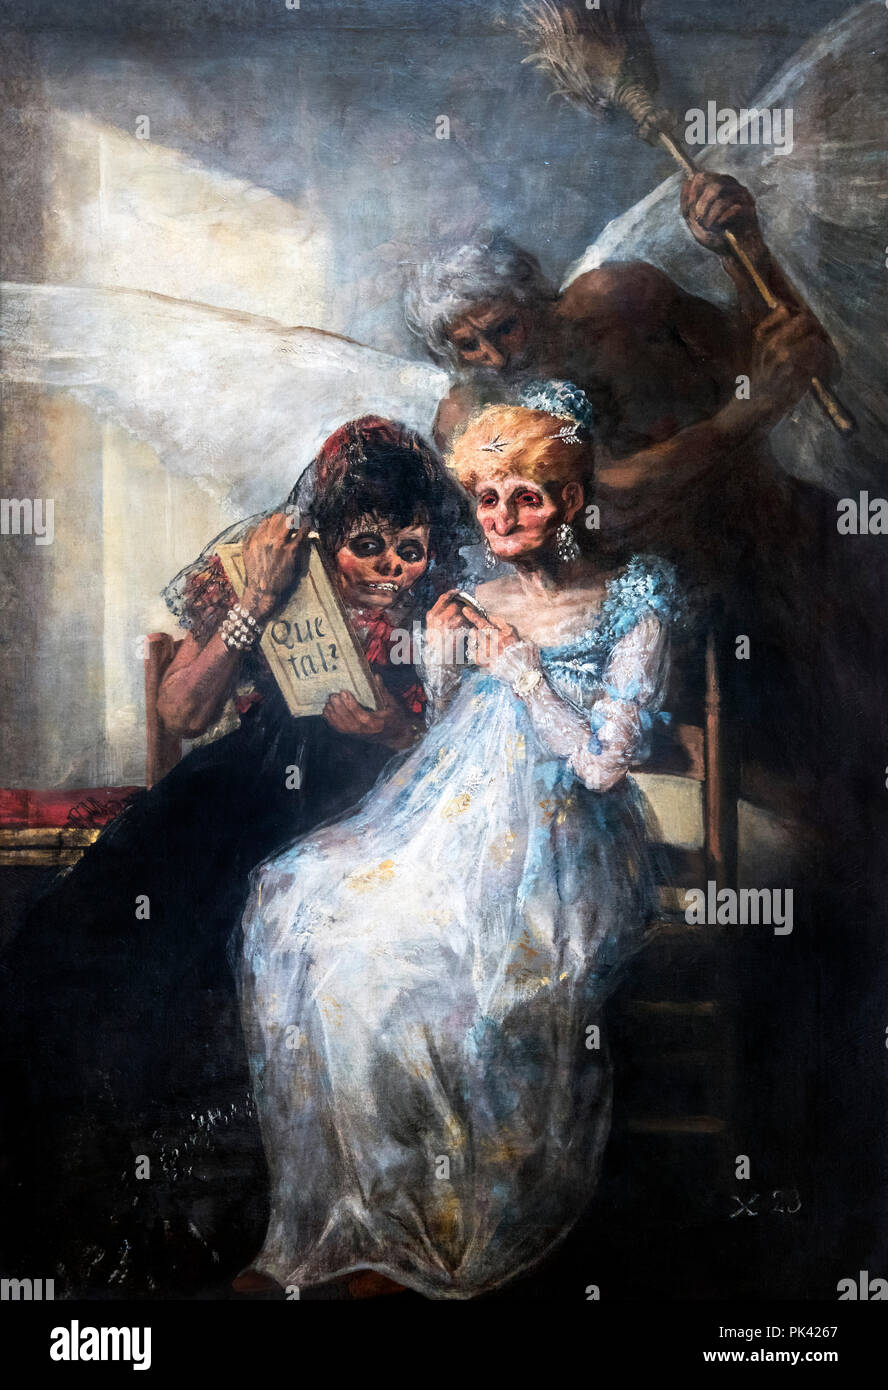 La pintura de Goya. 'Tiempo o ancianas' (Las viejas o el tiempo) por Francisco José de Goya y Lucientes (1746-1828), óleo sobre lienzo, 1808-12 Foto de stock